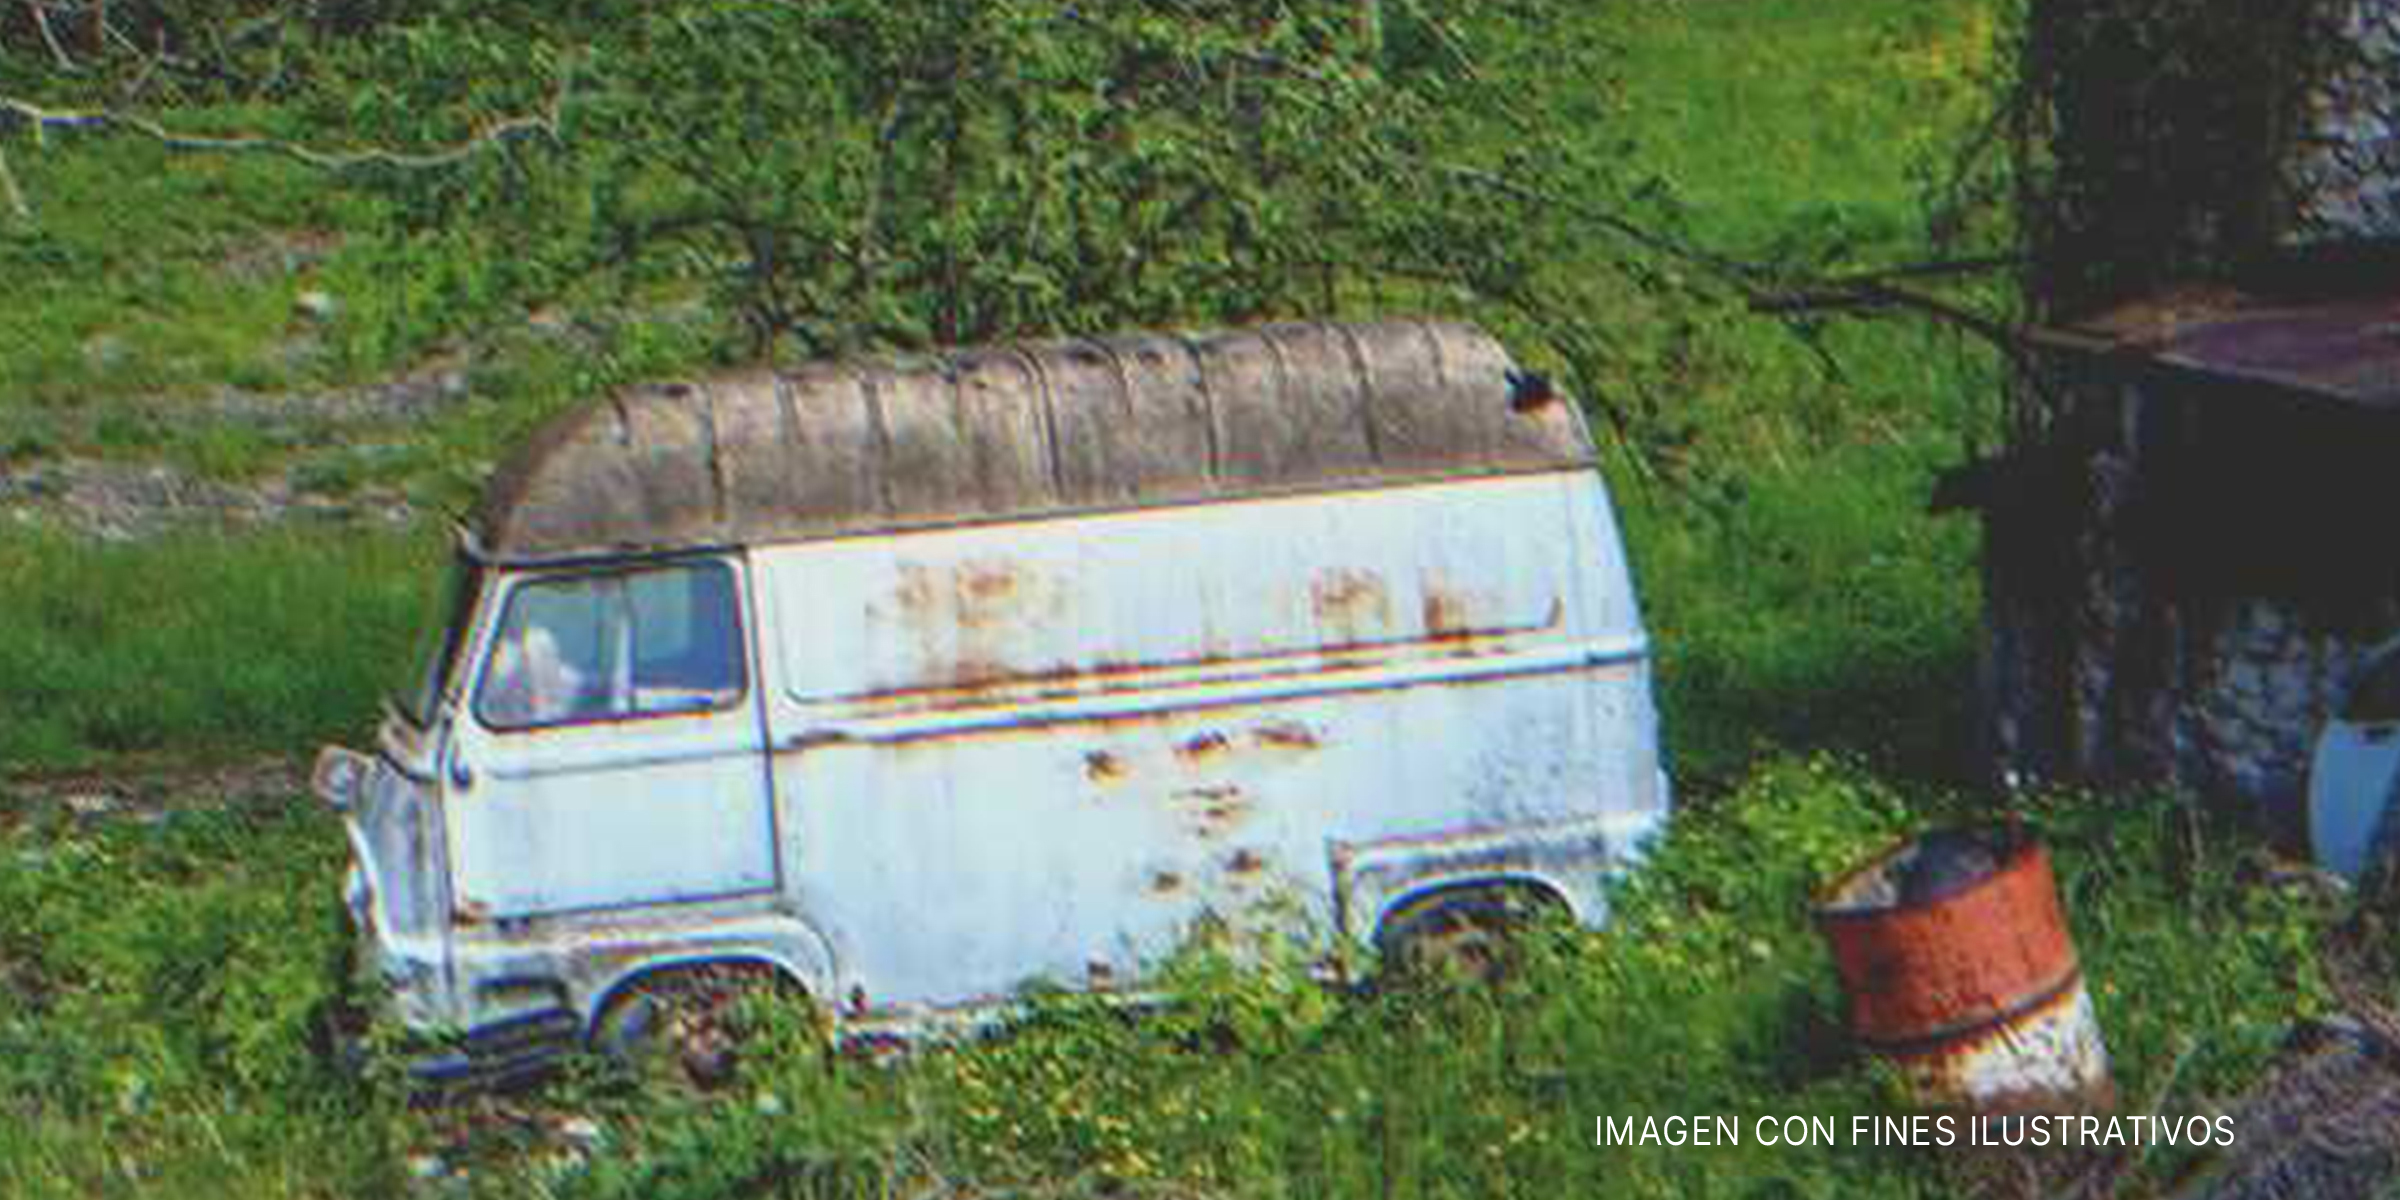 Una furgoneta abandonada sobre la hierba. | Foto: Shutterstock